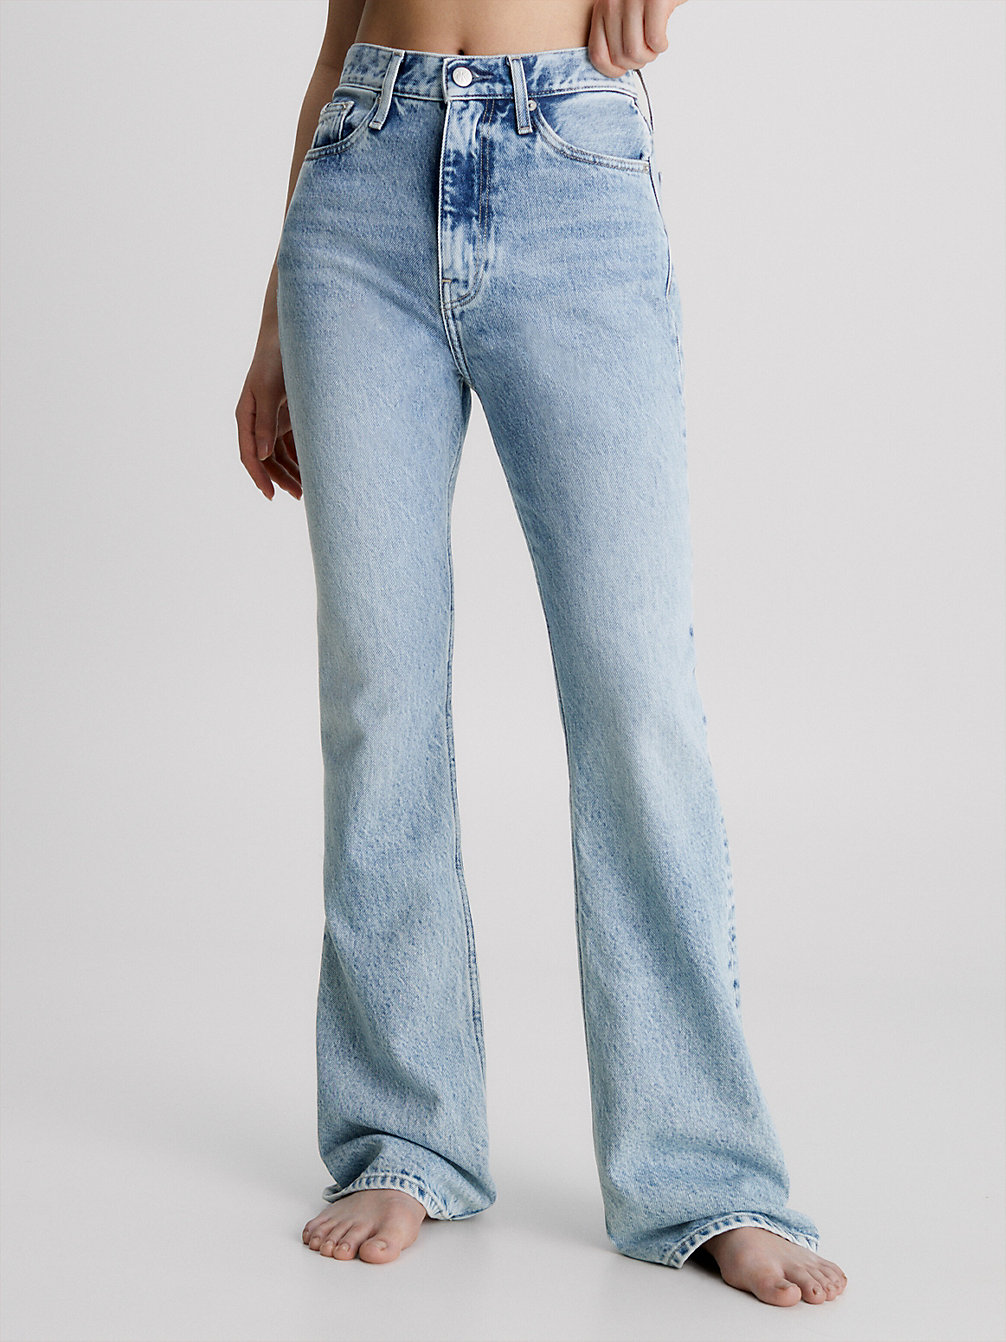 DENIM LIGHT Jeans Bootcut Originali undefined donna Calvin Klein